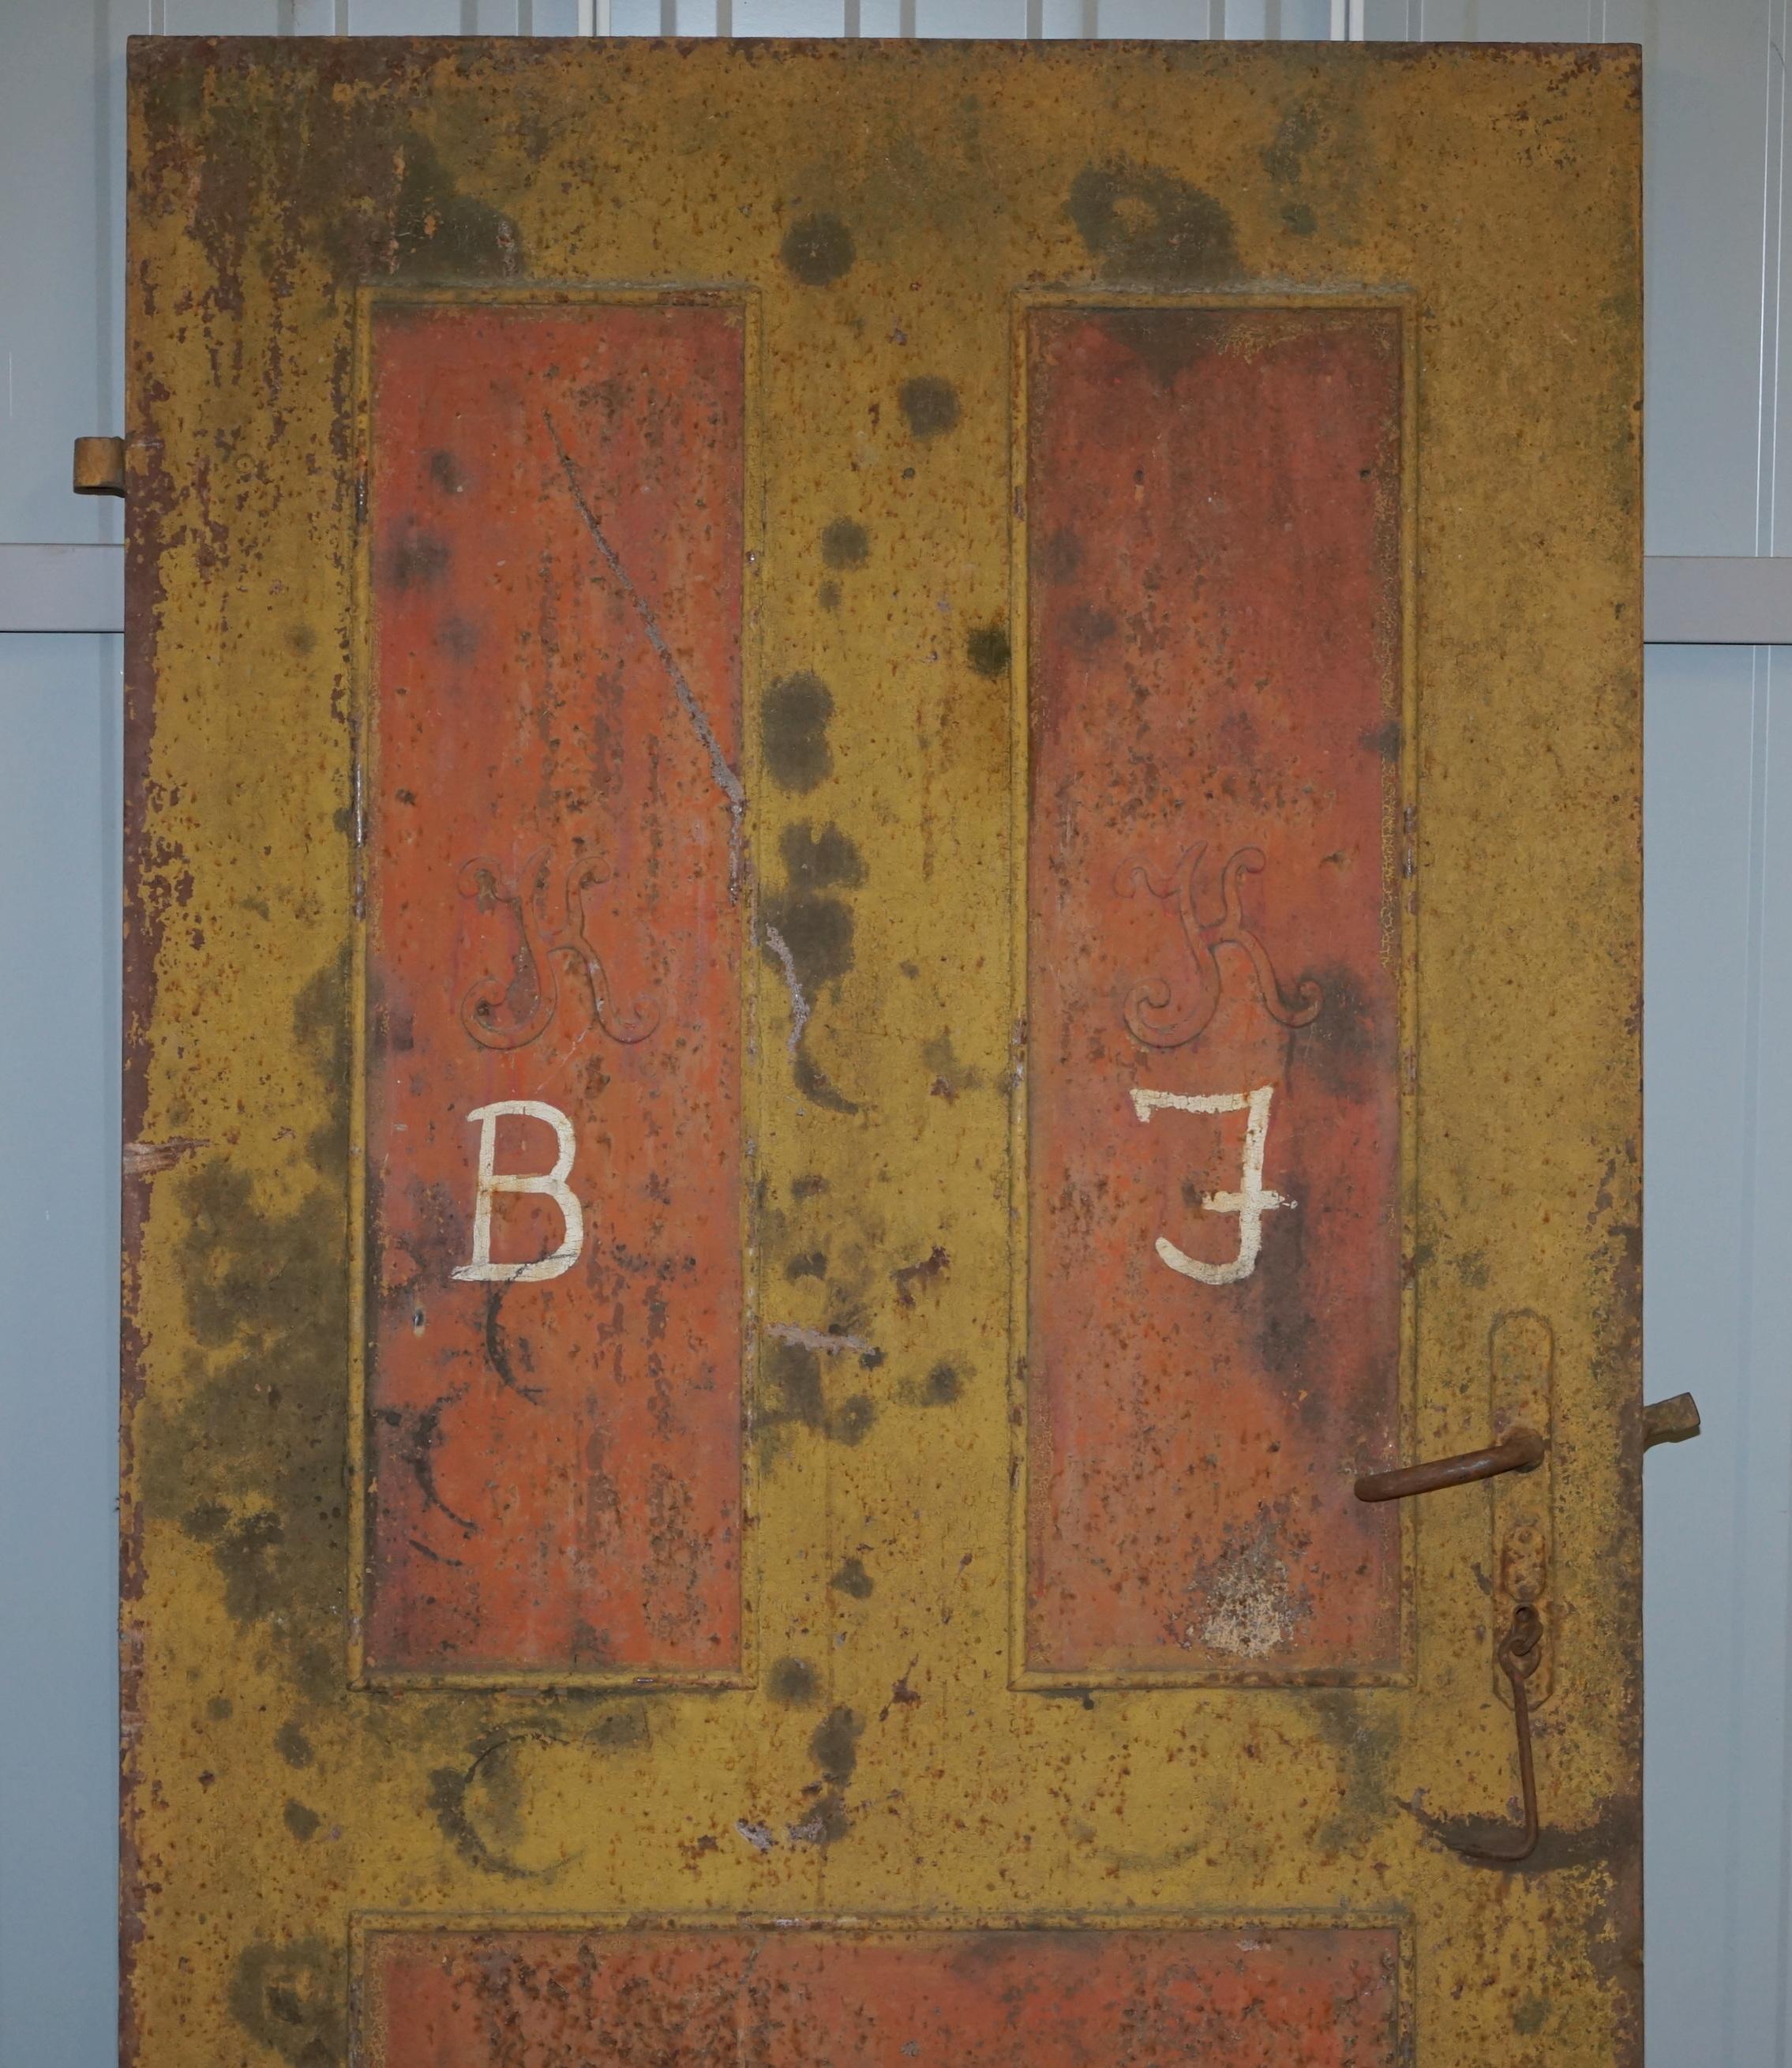 Nous sommes ravis d'offrir à la vente cette belle porte de sécurité originale hongroise peinte à la main datant de 1922 et utilisée pour empêcher les pillages après la guerre

Une très belle pièce, idéalement adaptée à la décoration uniquement,